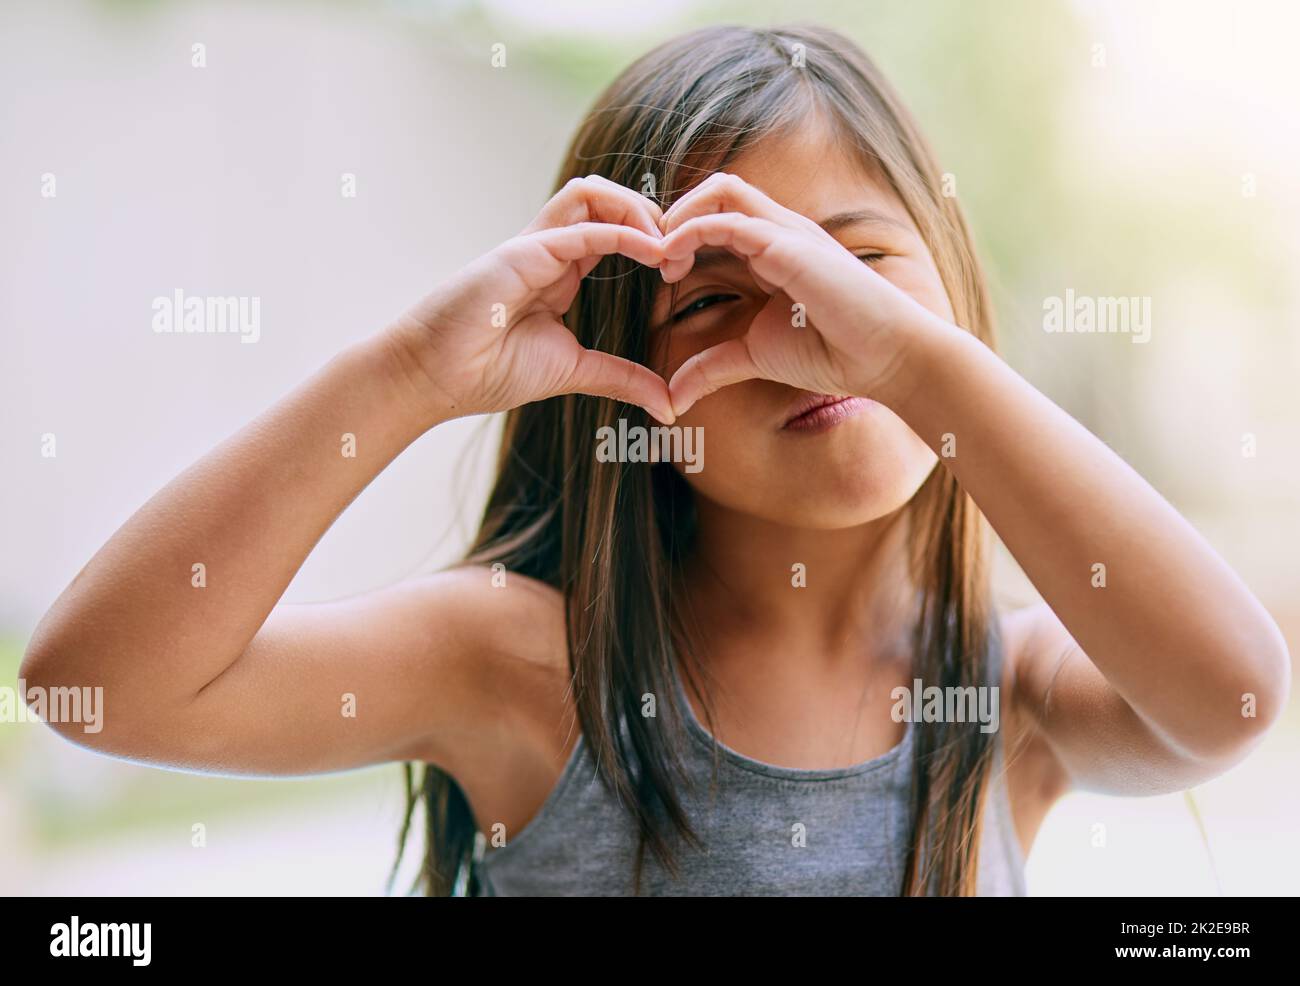 Das Leben mit Liebe und Glück füllen. Porträt eines kleinen Mädchens, das mit ihren Händen eine Herzgeste macht. Stockfoto